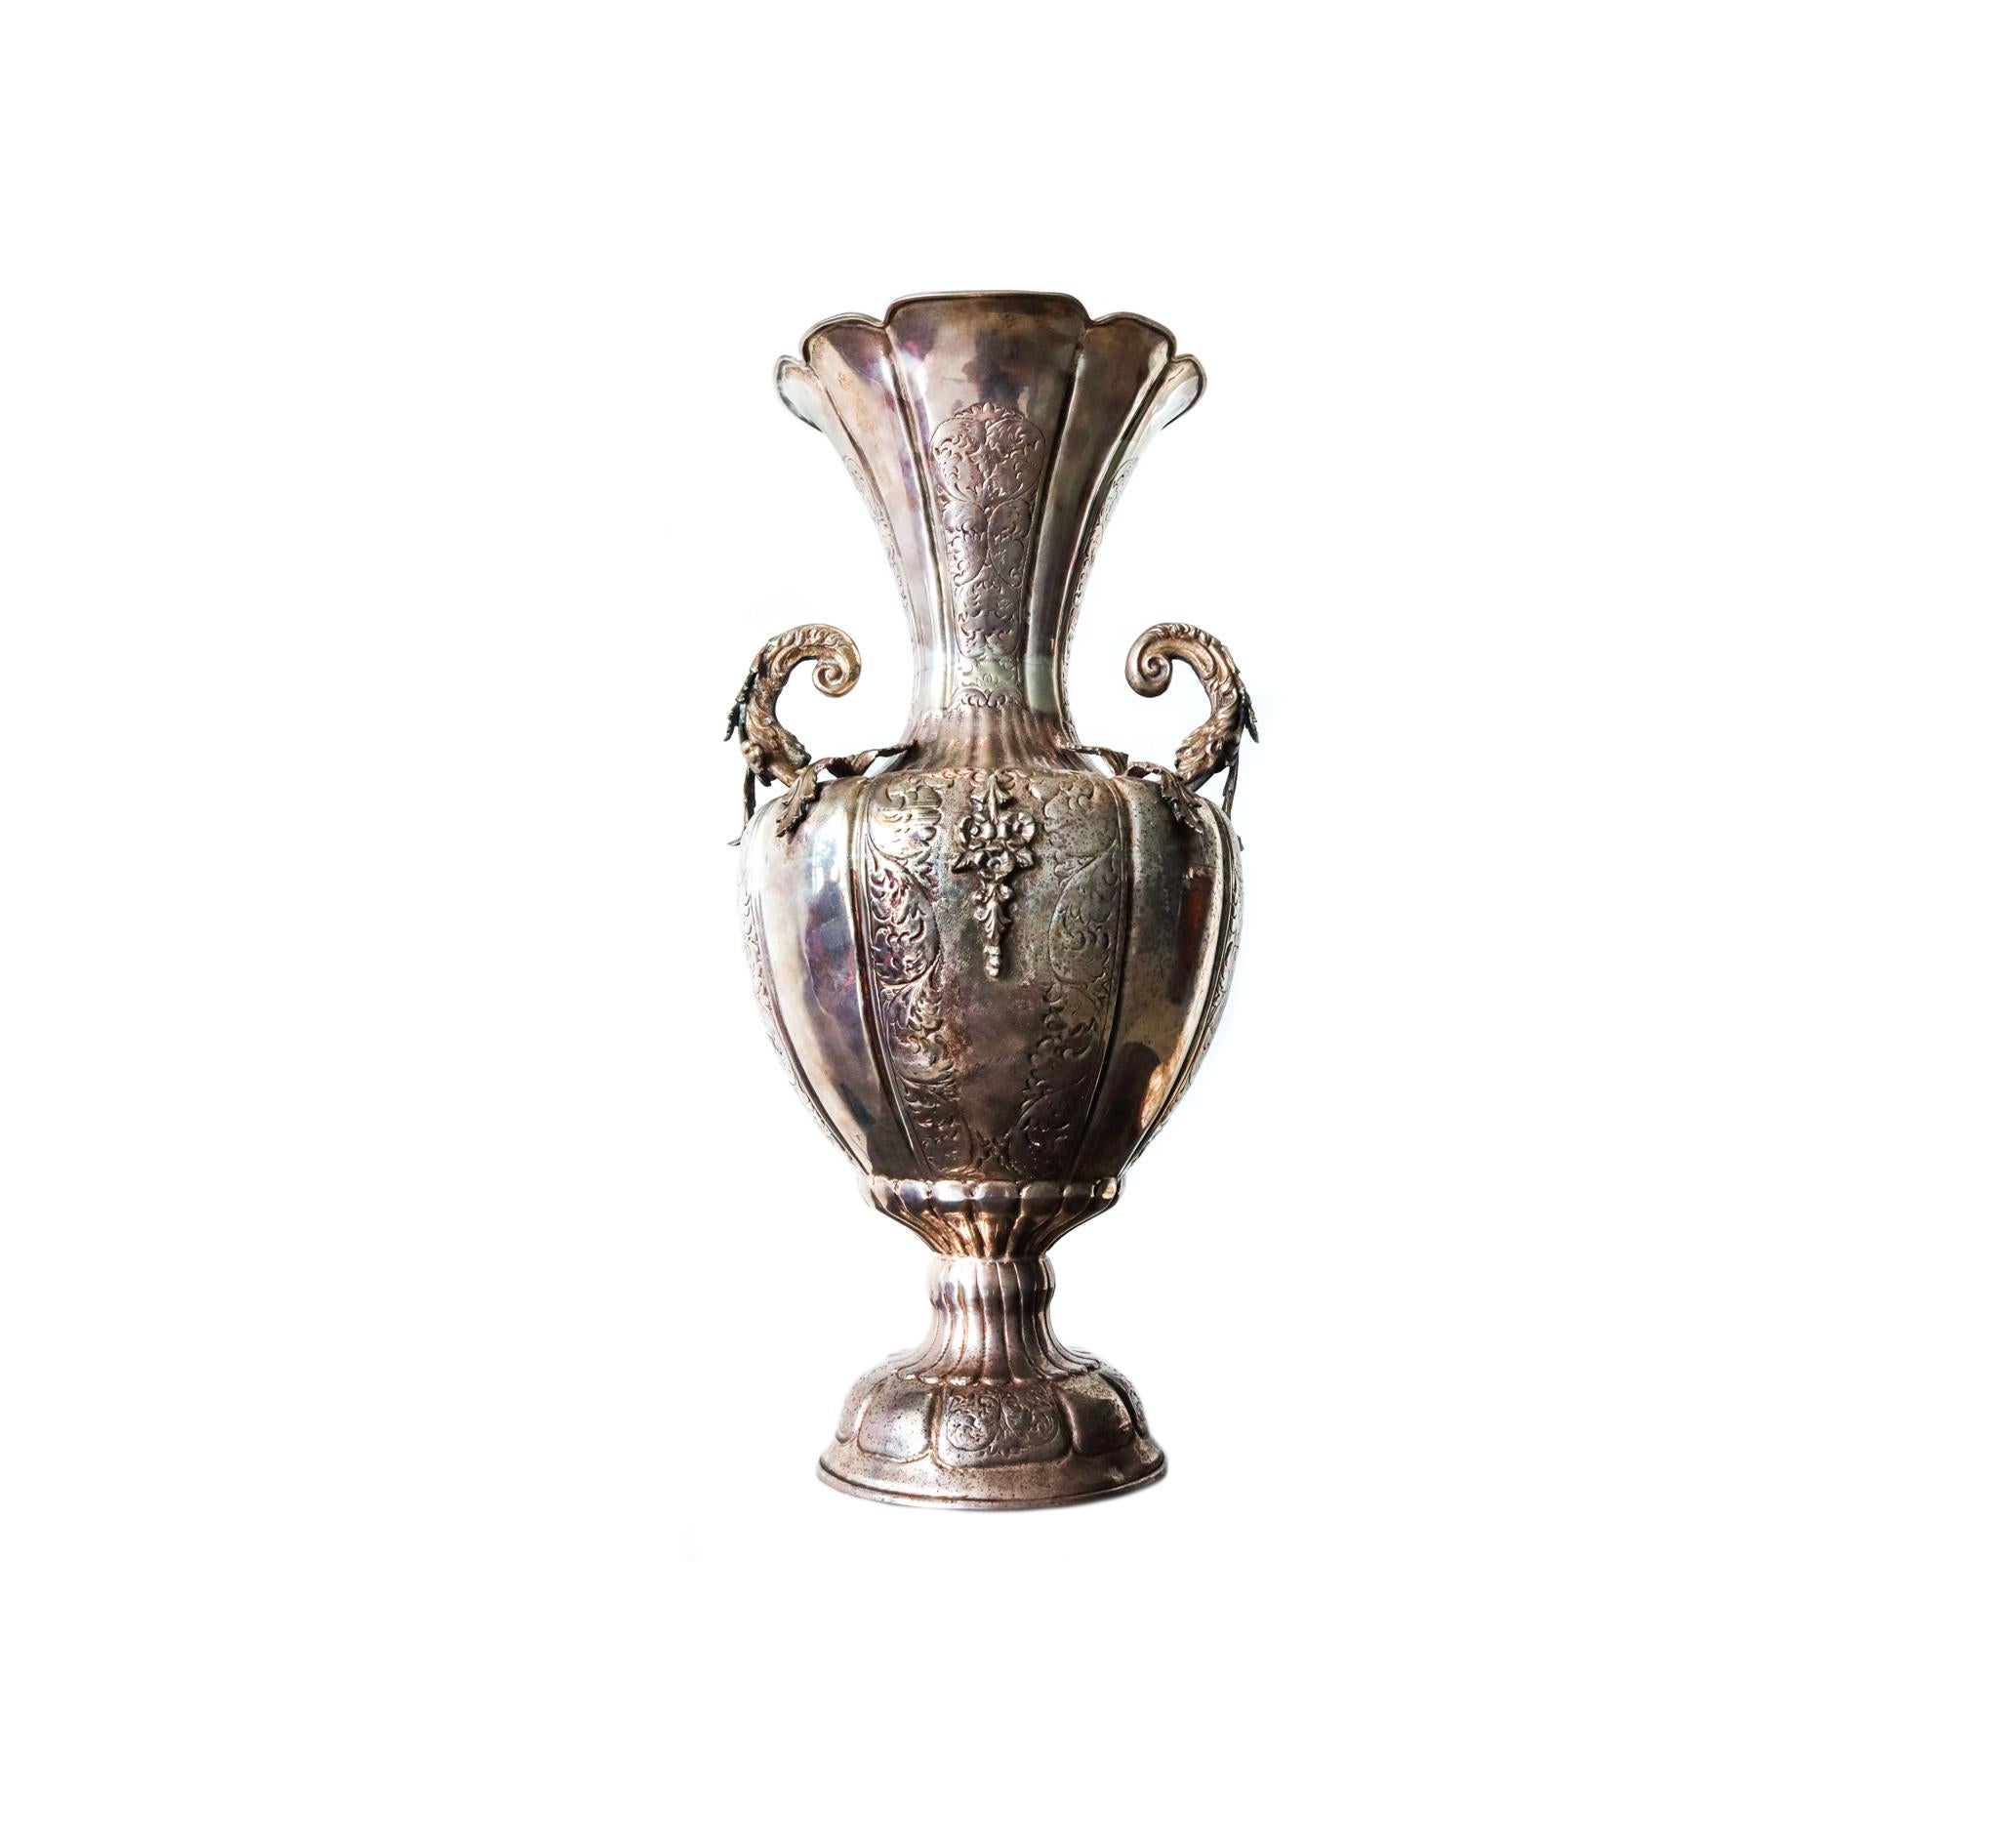 Un vase amphora colonial espagnol avec des poignées.

Magnifique pièce d'argent ancienne surdimensionnée, aux motifs baroques et néoclassiques. Réalisée au début du XIXe siècle, pendant la période coloniale espagnole, vers 1820, très probablement